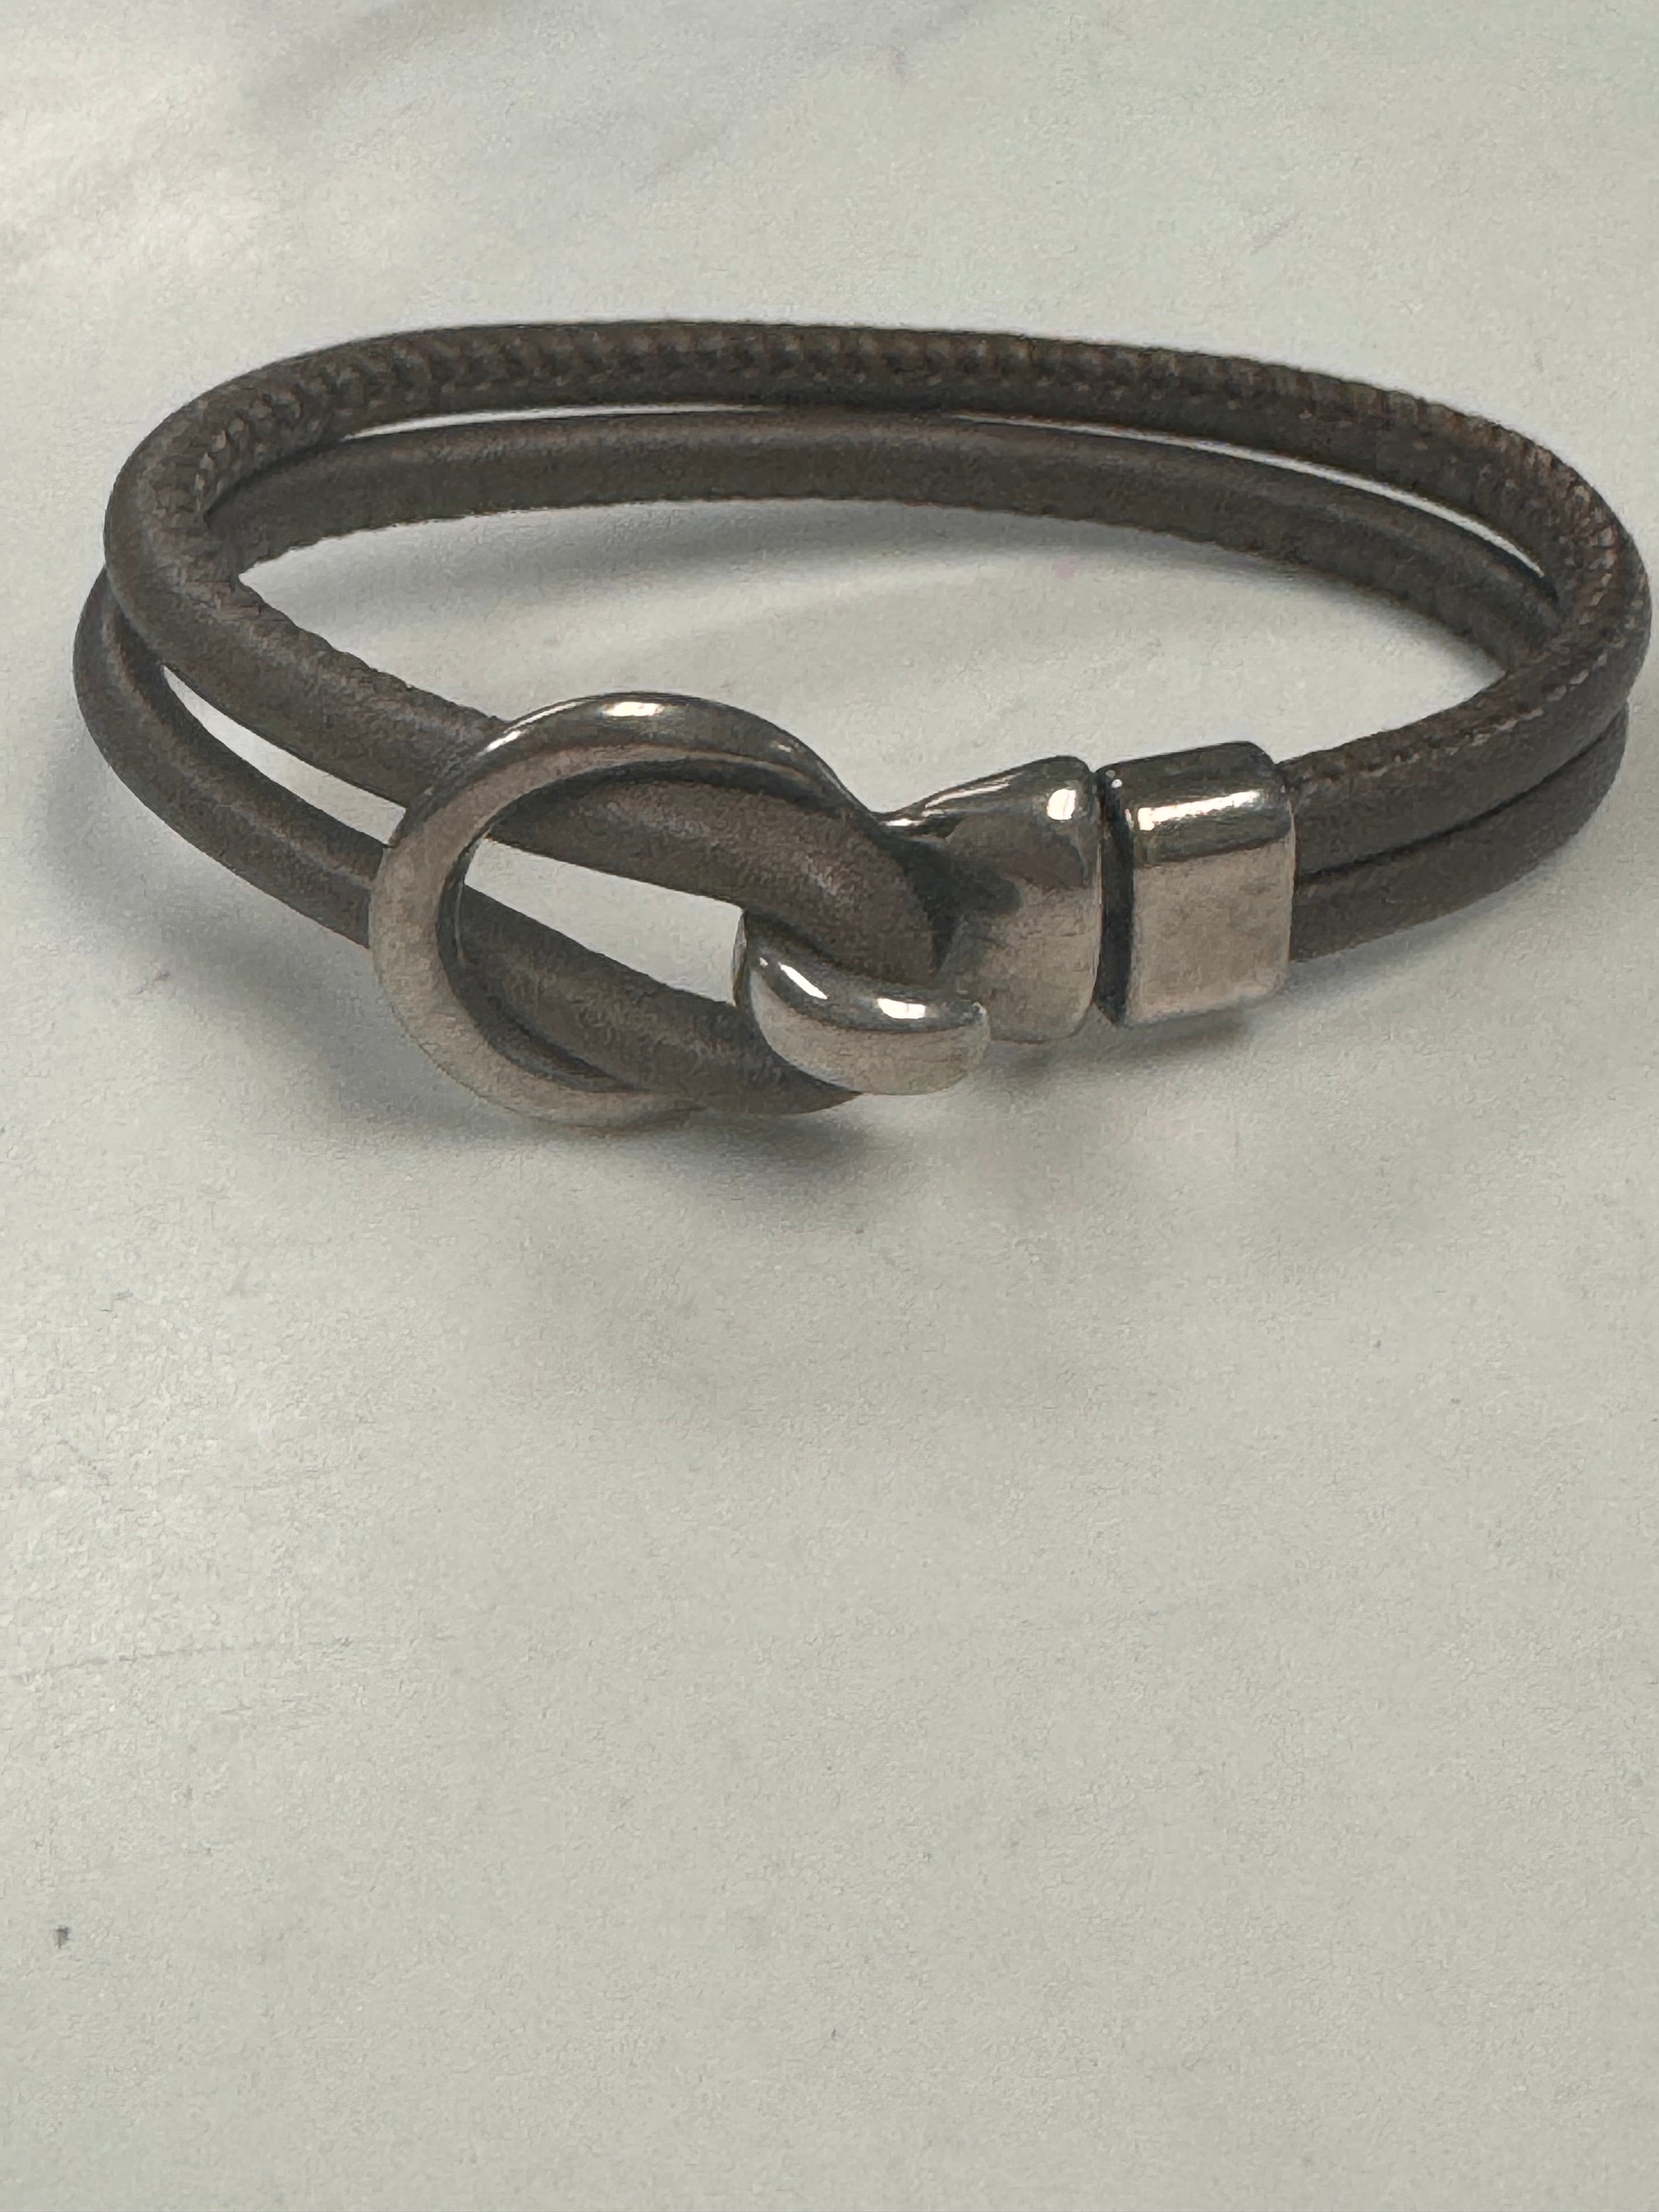 LILO Collection "Avila" Bracelet